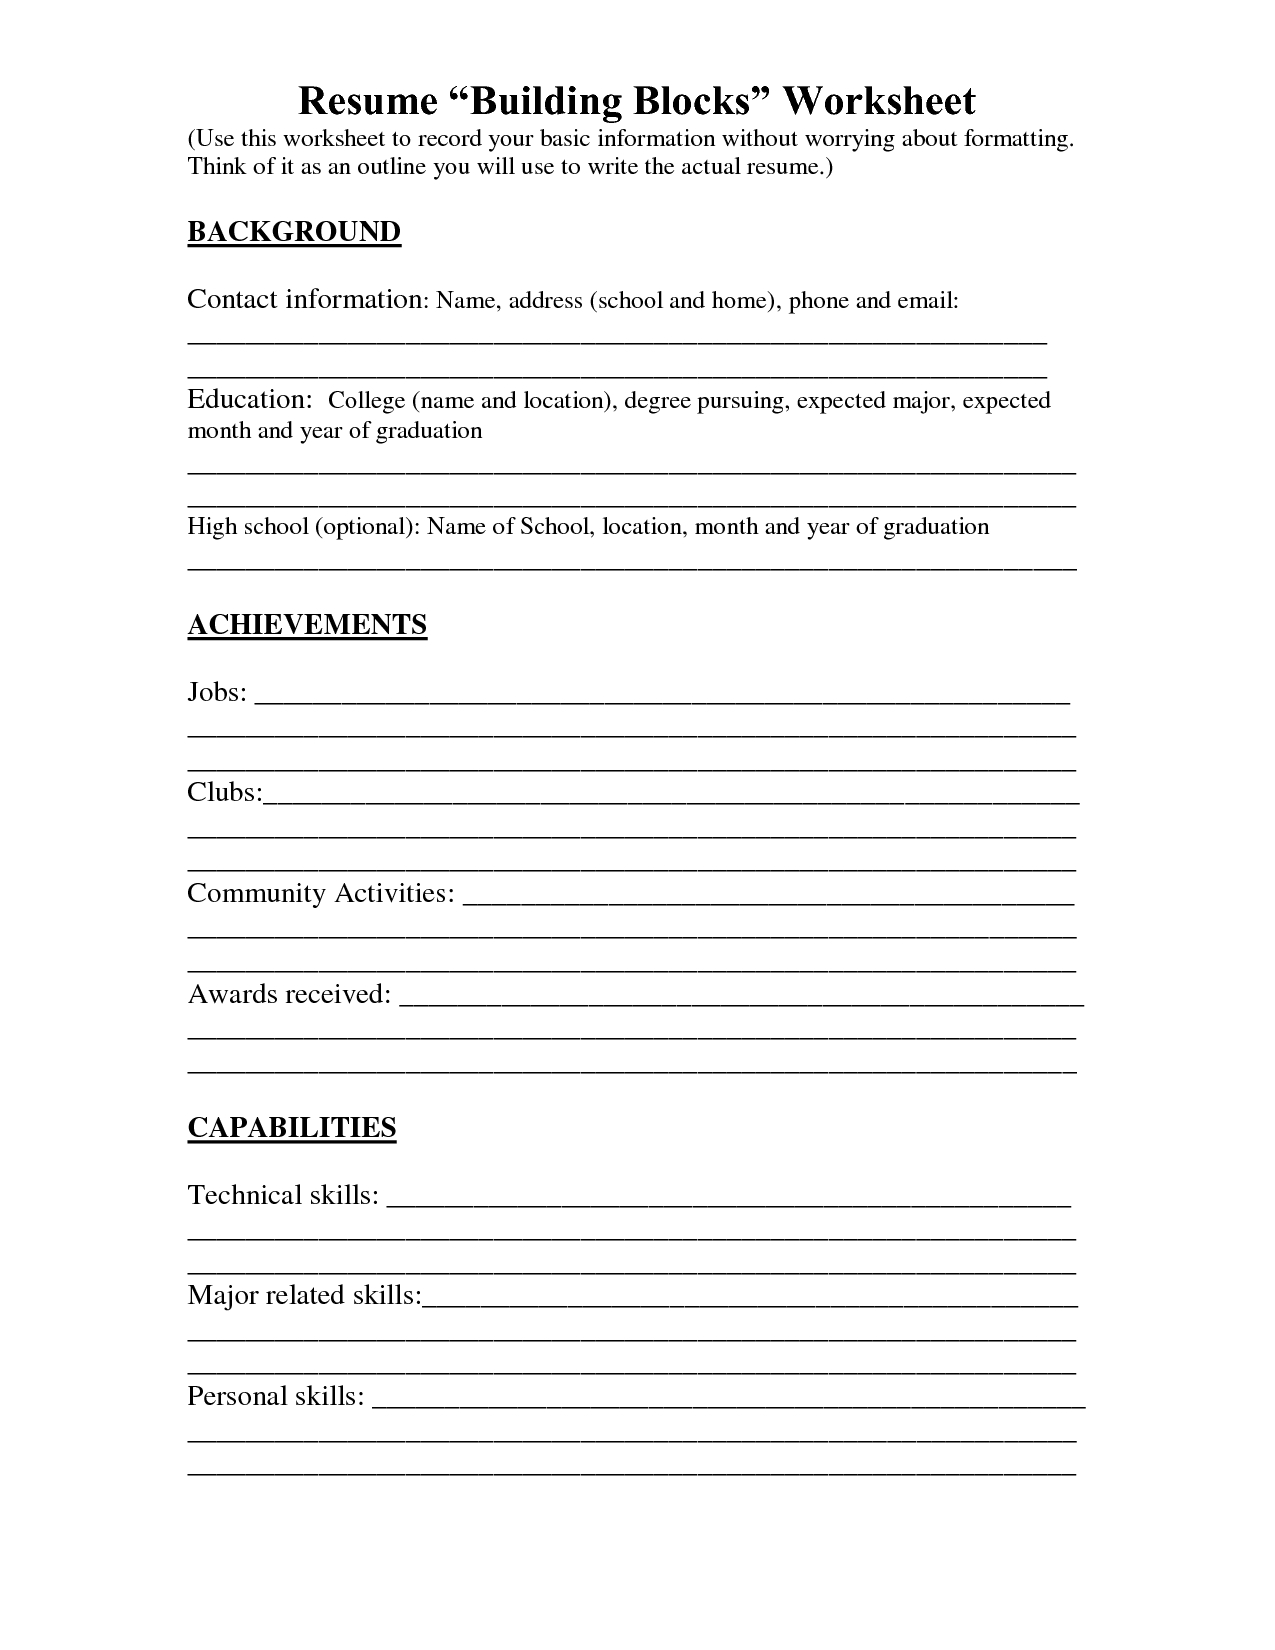 Resume Worksheet Printable And High School Builder Free Bulder Build - Free Printable Worksheets For Highschool Students